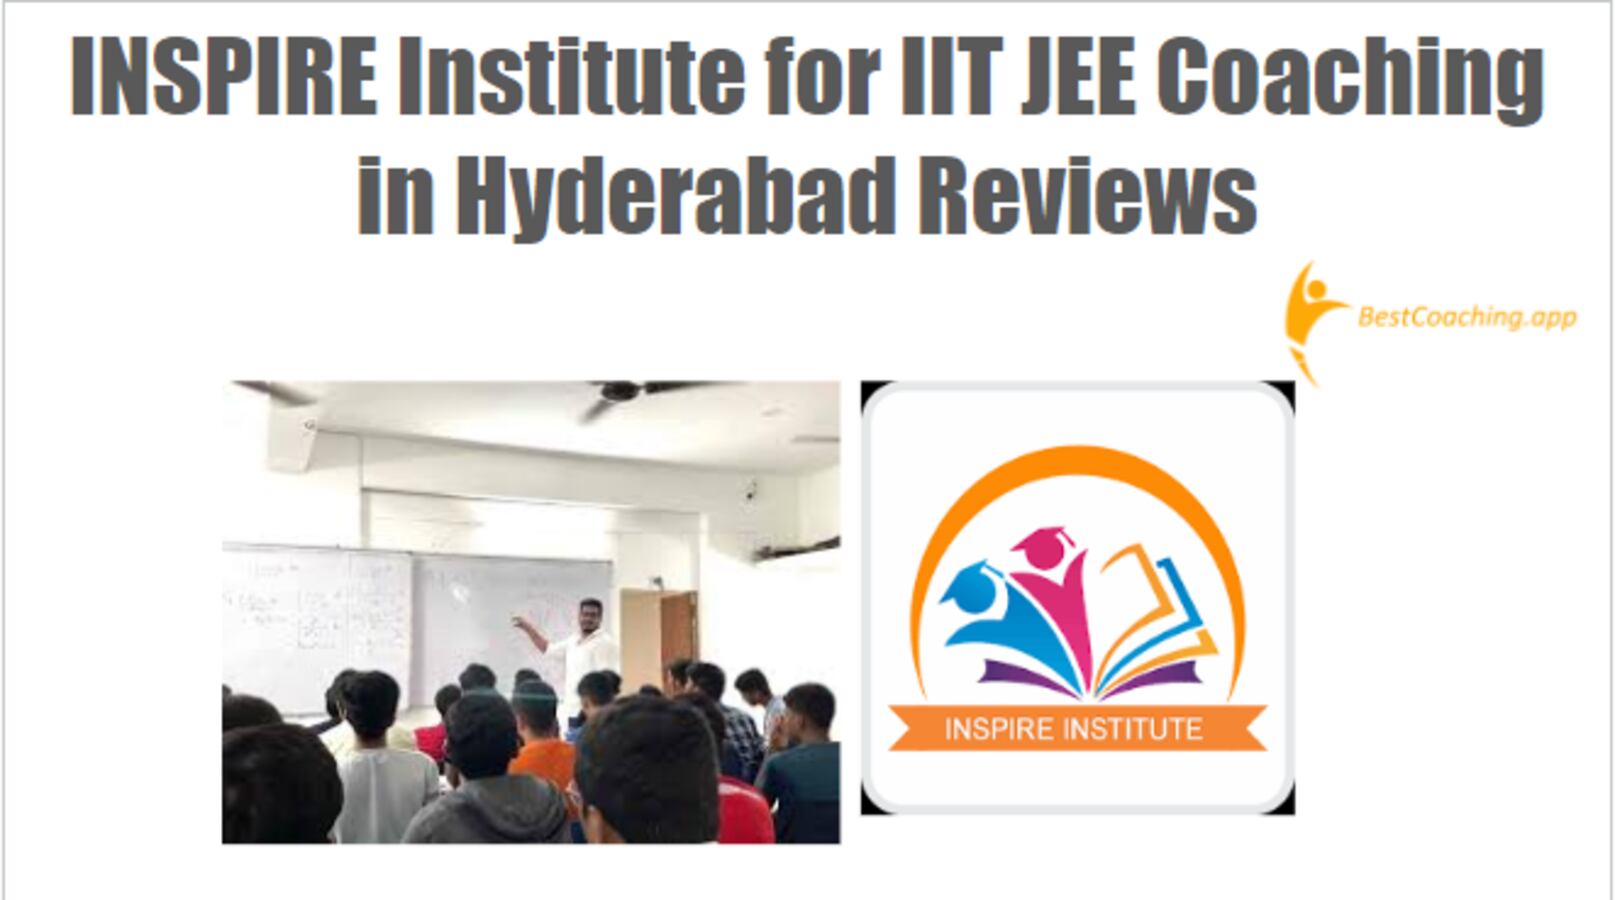 INSPIRE Institute for IIT JEE Coaching in Hyderabad